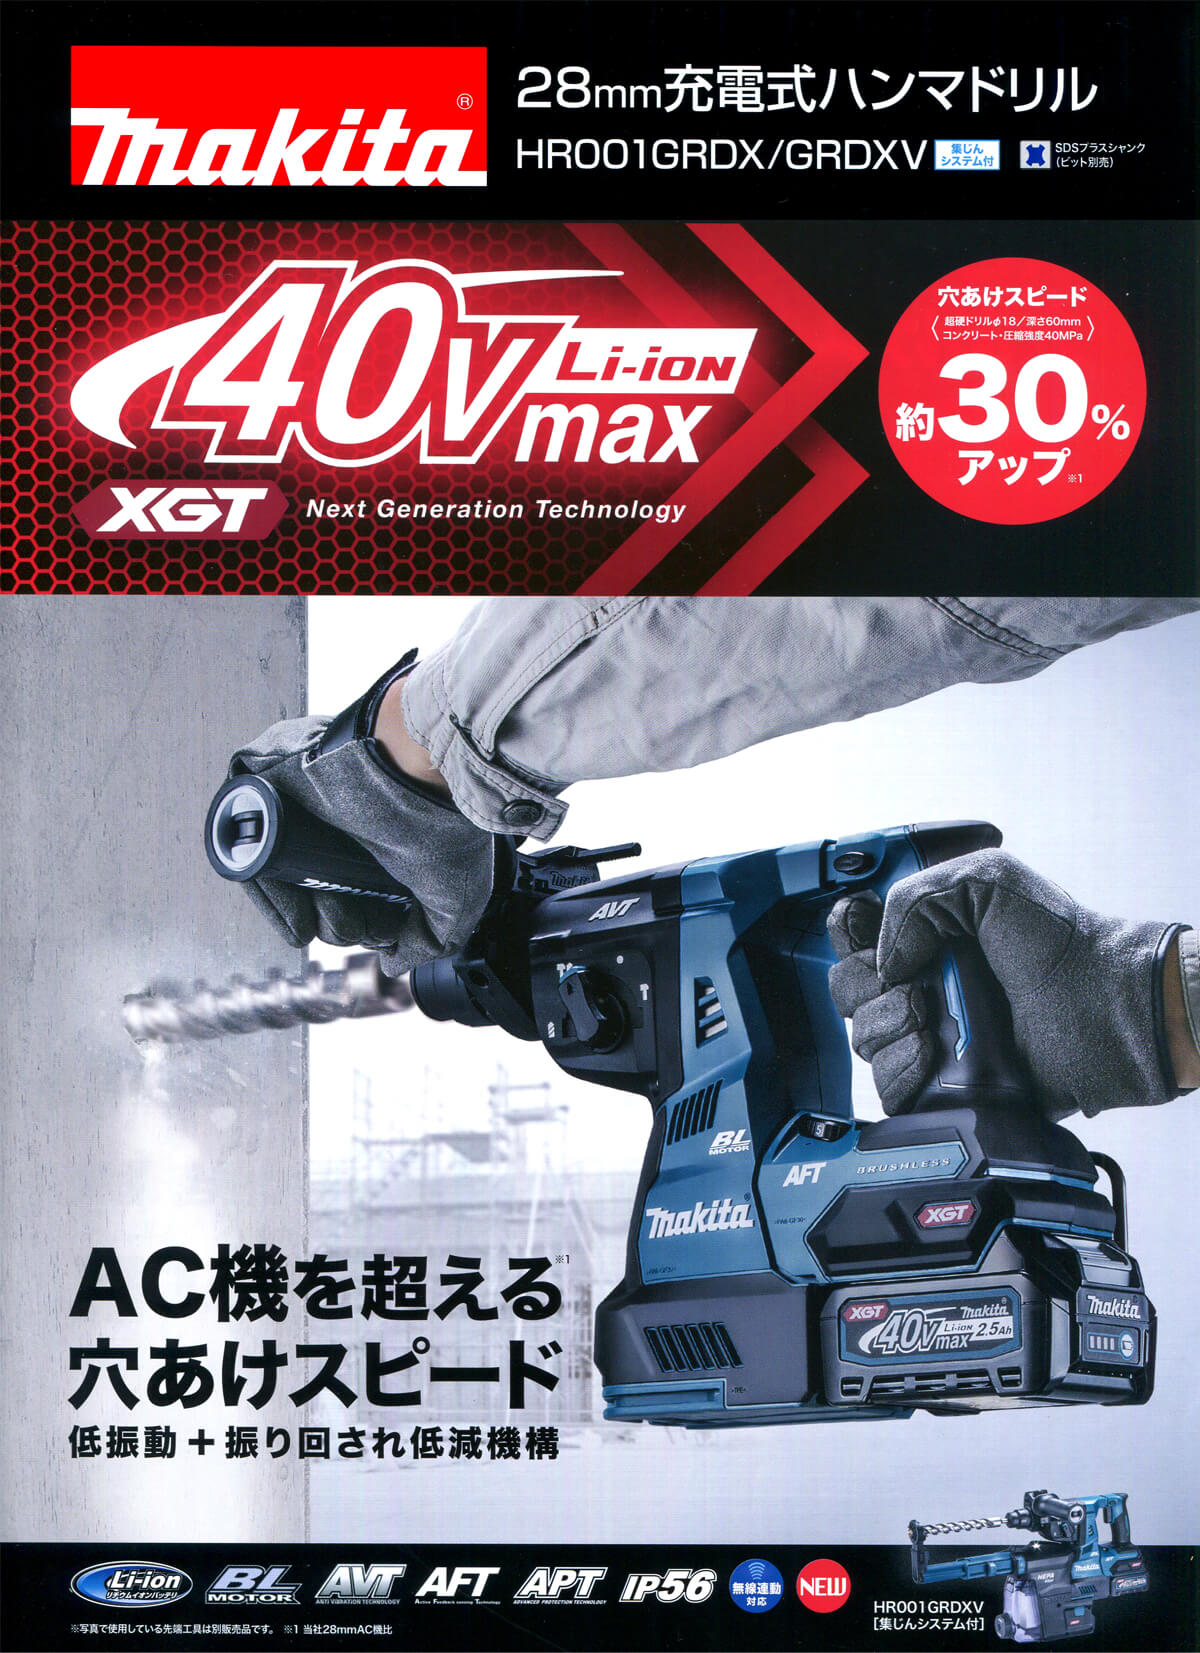 マキタ HR001GRDXV 40Vmax 28mm充電式ハンマードリル(集塵システム付) ウエダ金物【公式サイト】